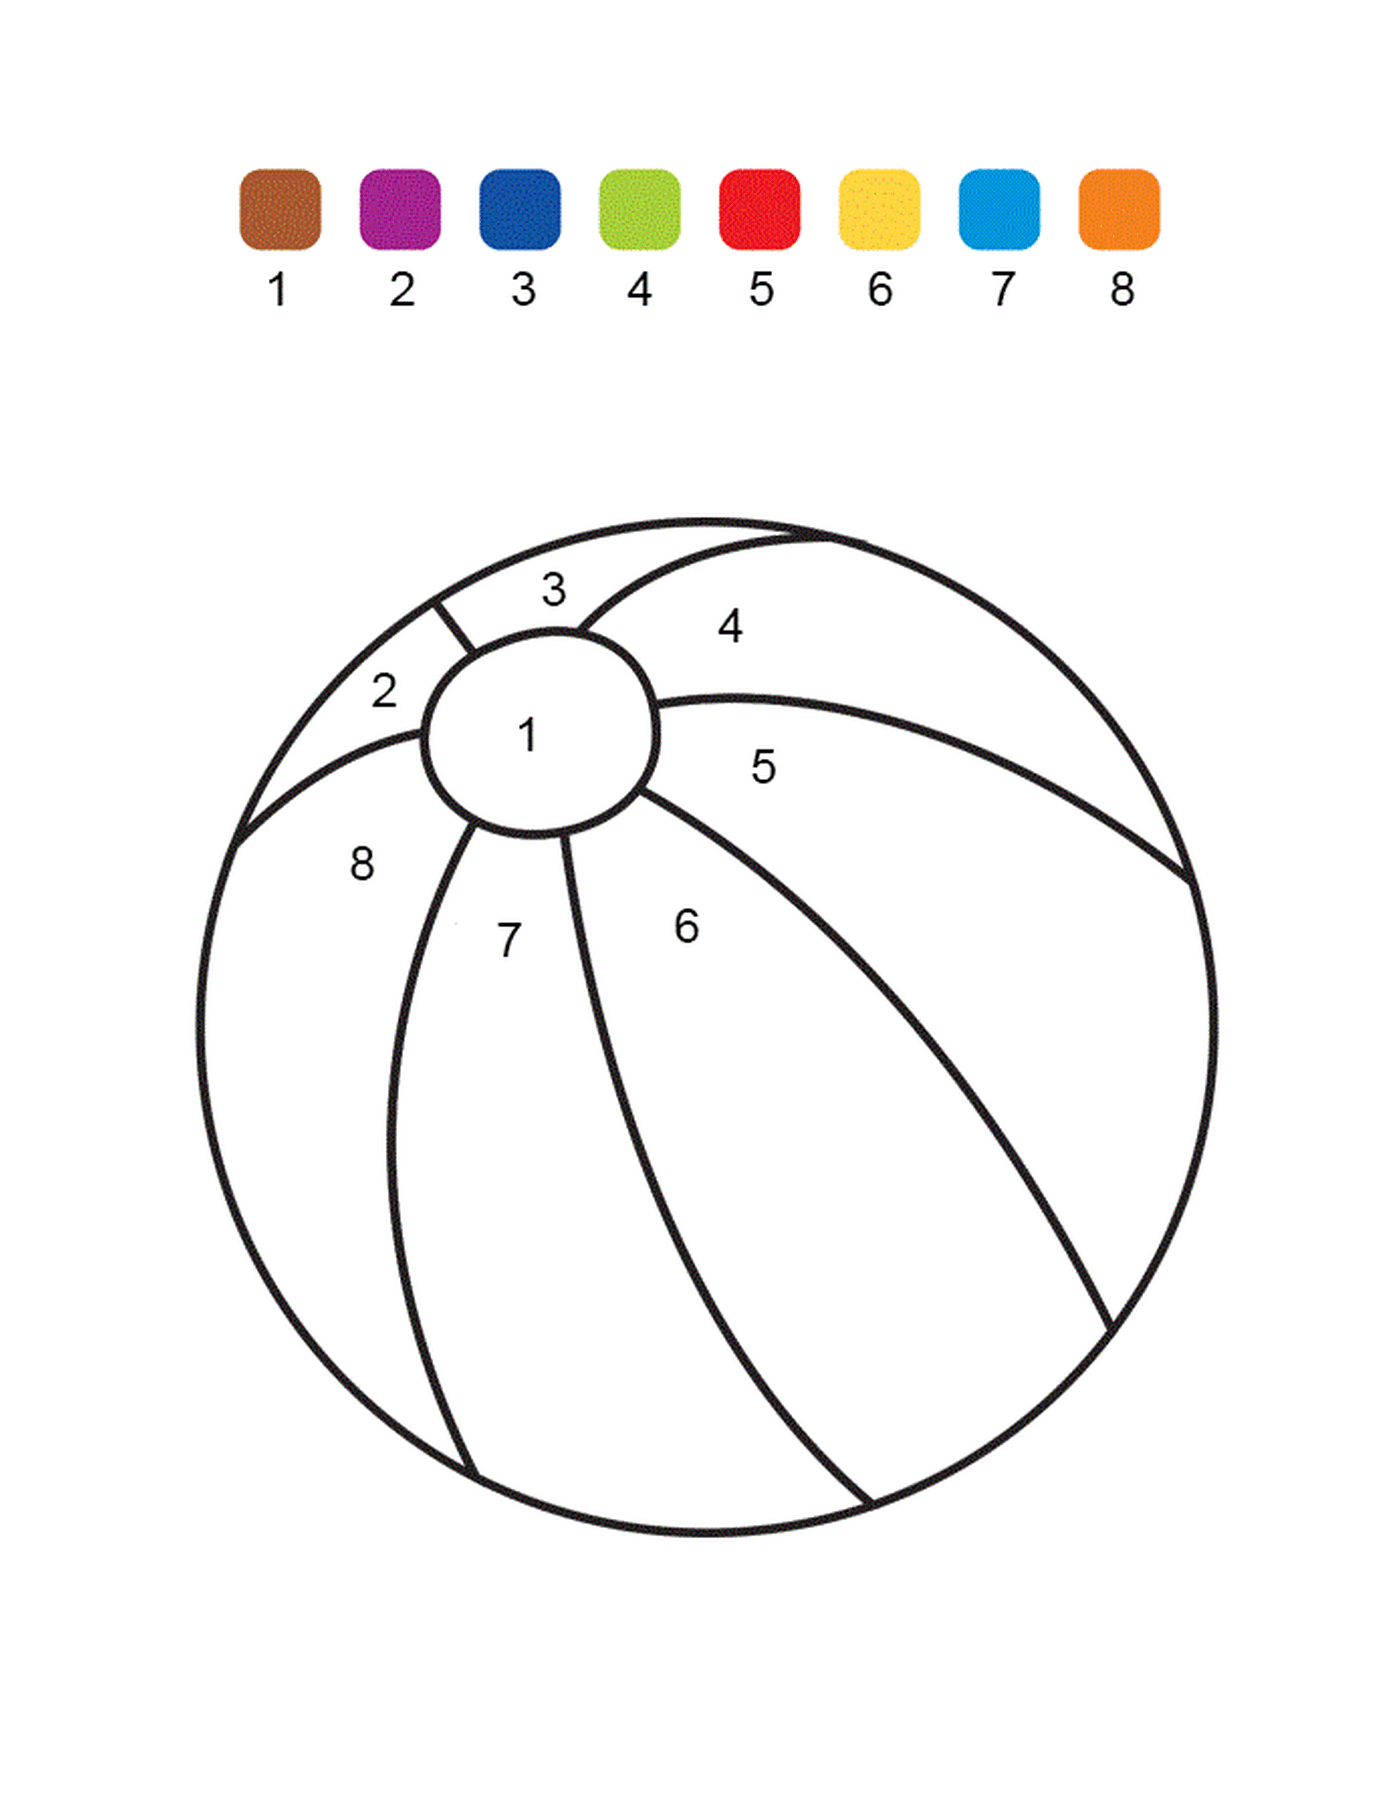  Una sfera colorata numerata 